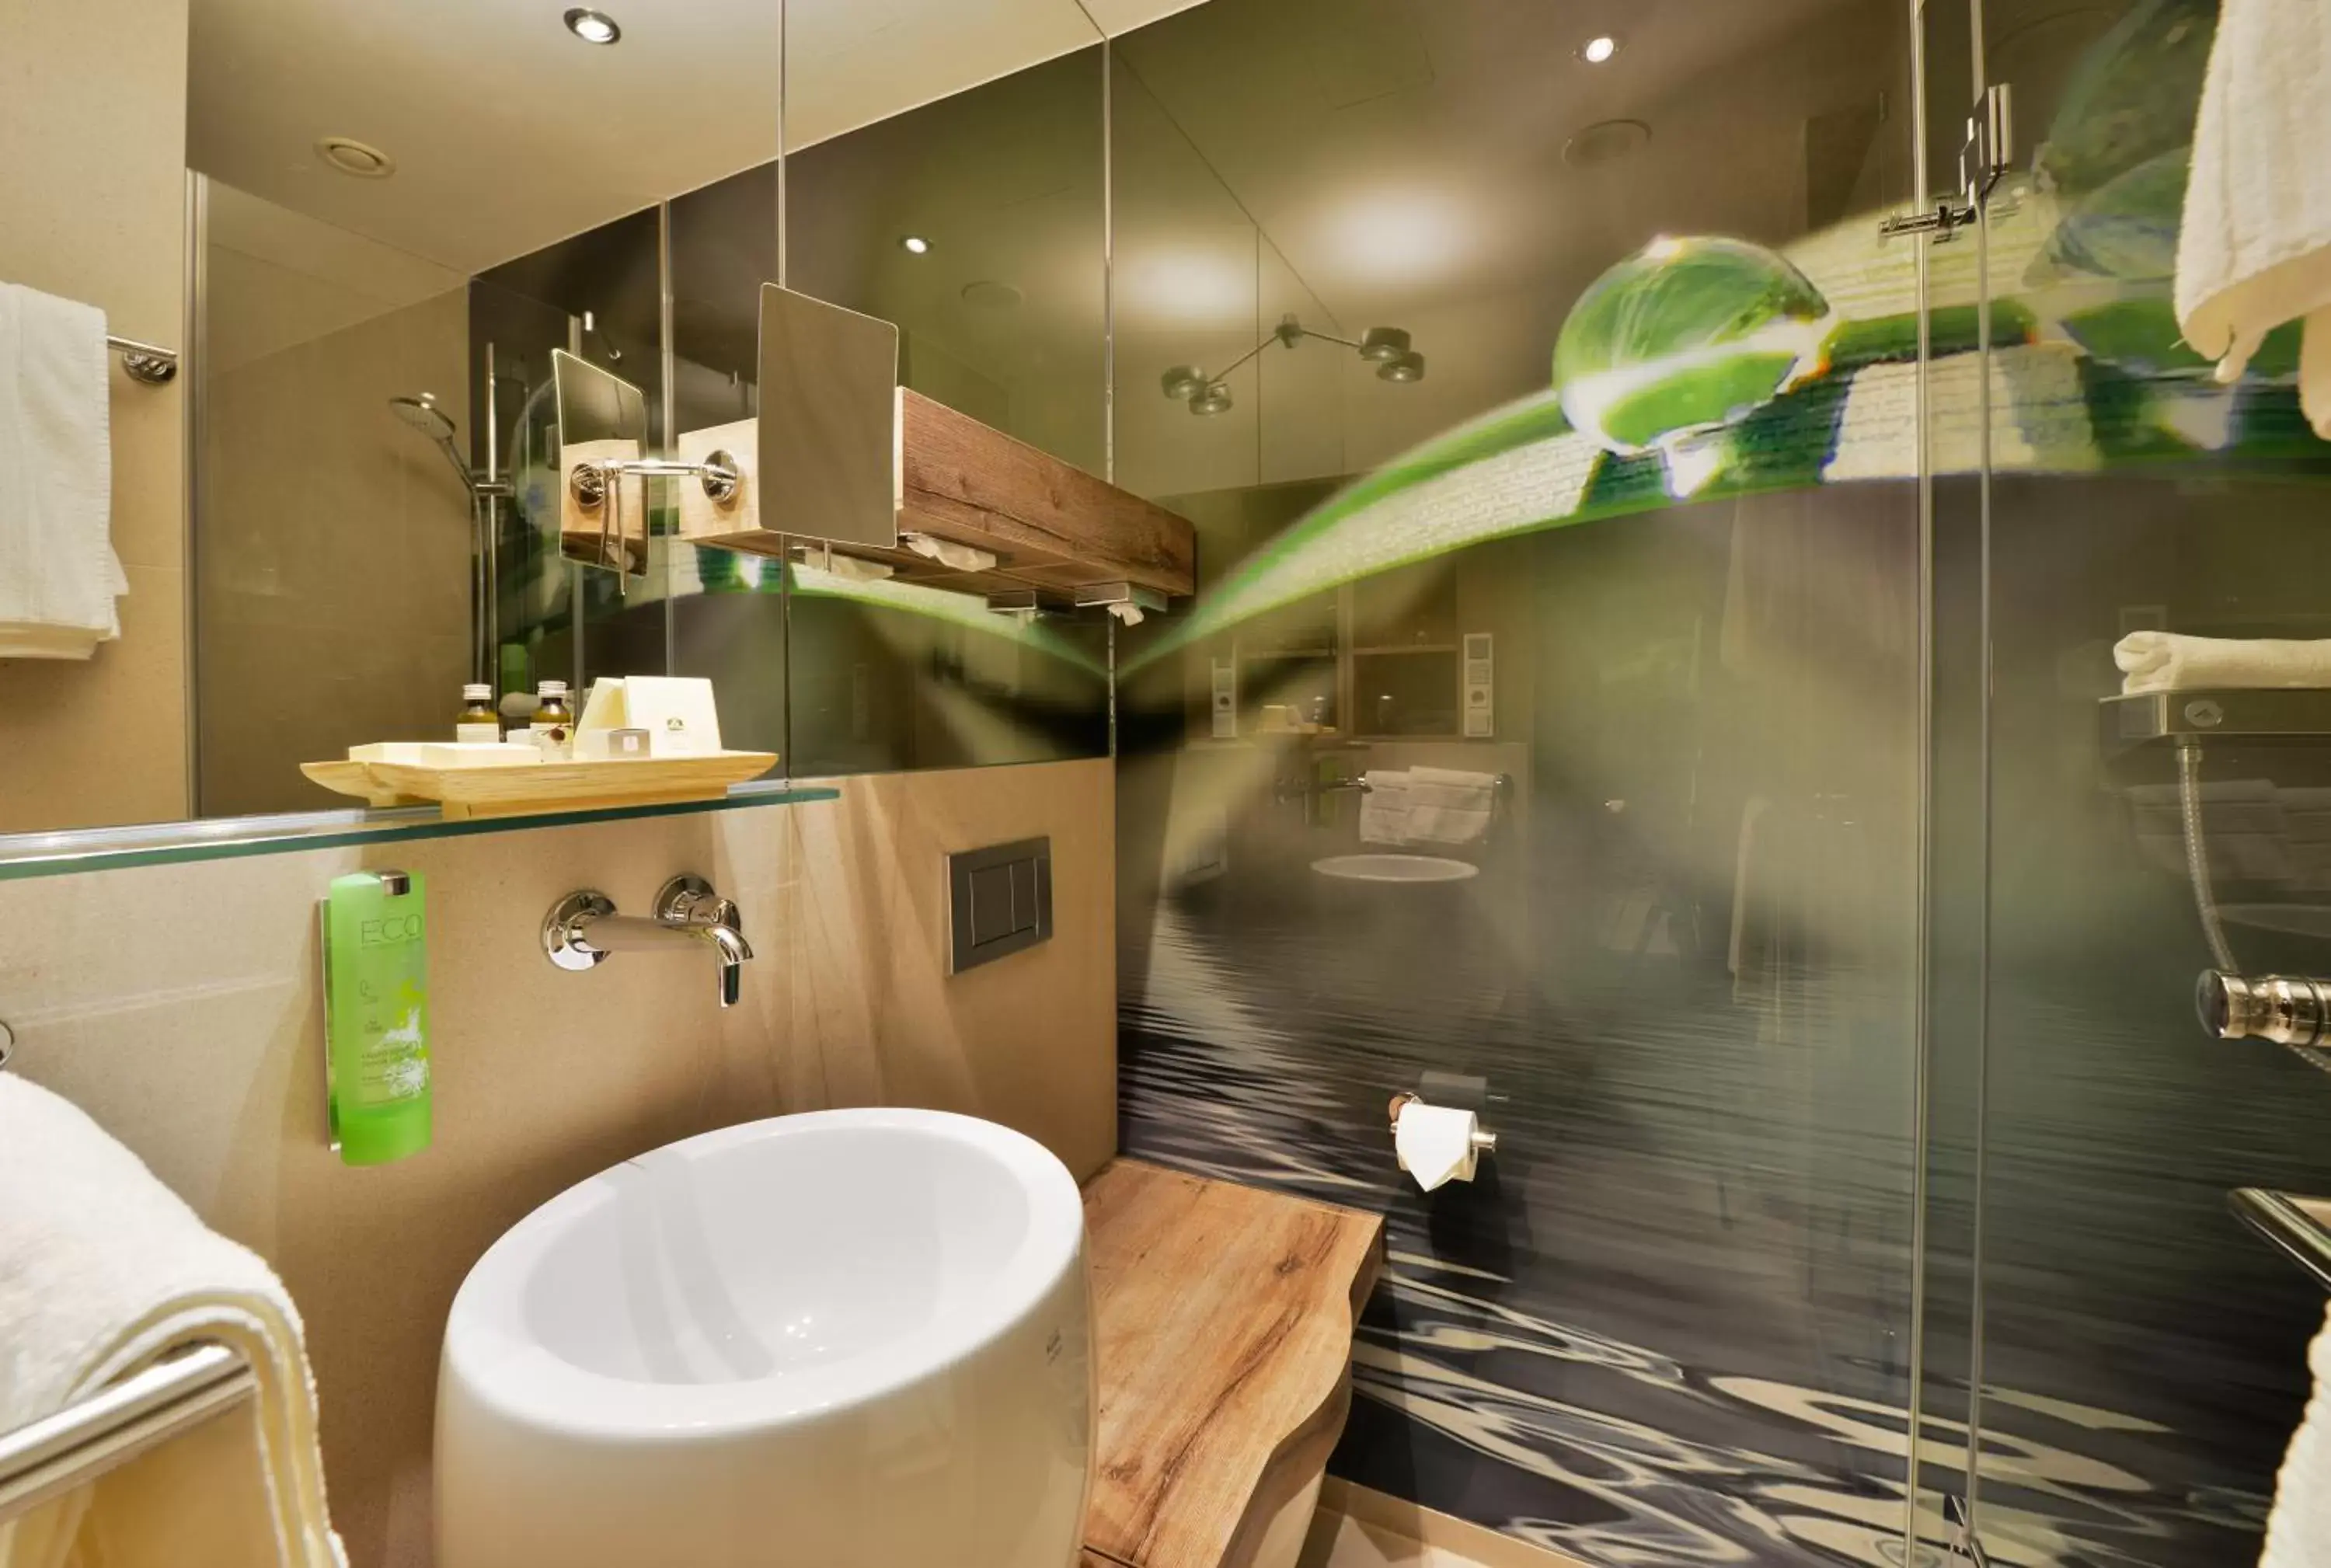 Decorative detail, Bathroom in Best Western Premier Hotel Victoria